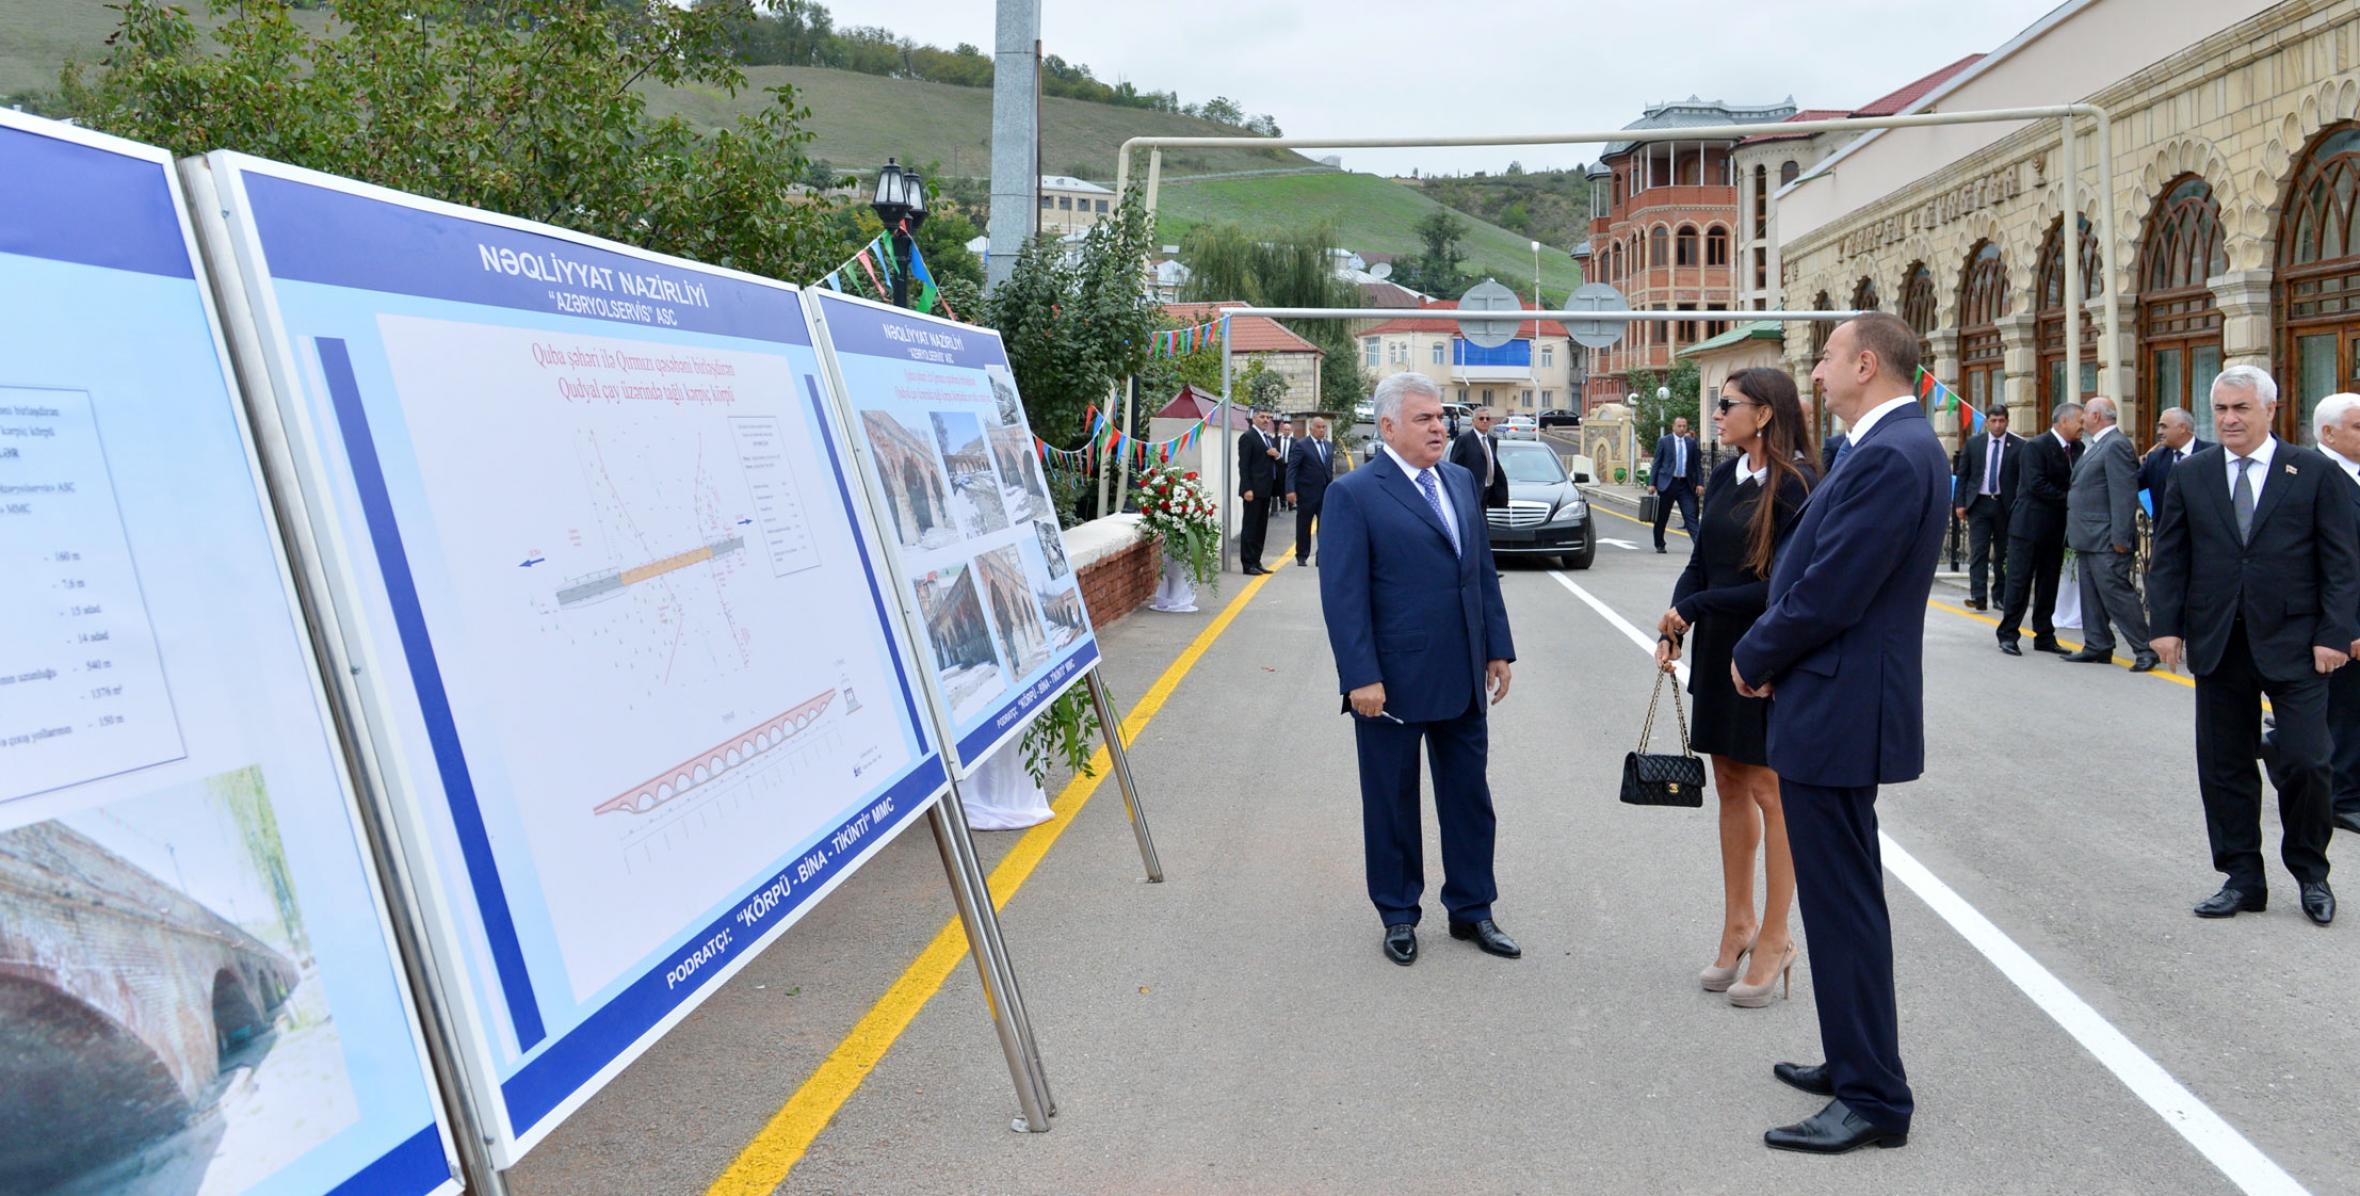 Ильхам Алиев ознакомился с состоянием арочного «Красного моста» над рекой Гудъялчай на территории поселка Красная слобода в Губе после реконструкции